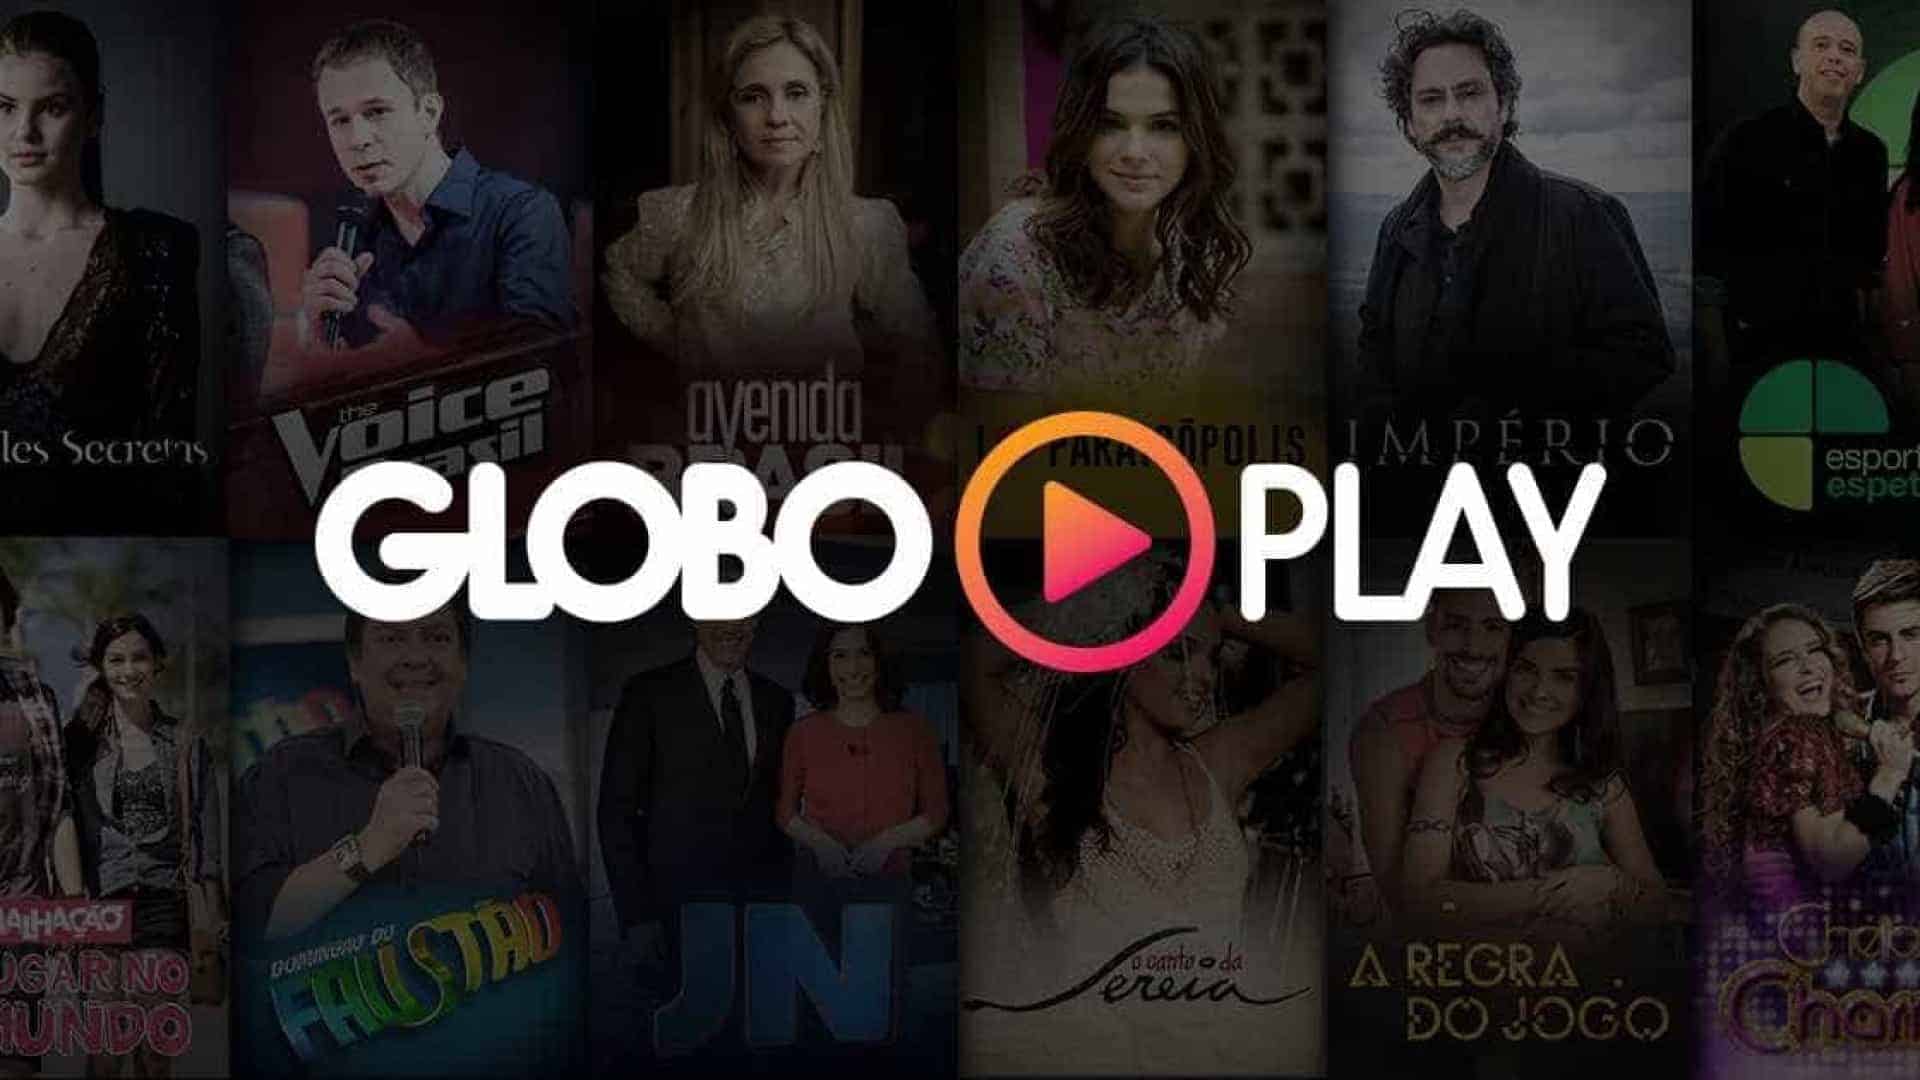 Foto do catálogo da plataforma Globo Play, onde encontramos novelas grátis.